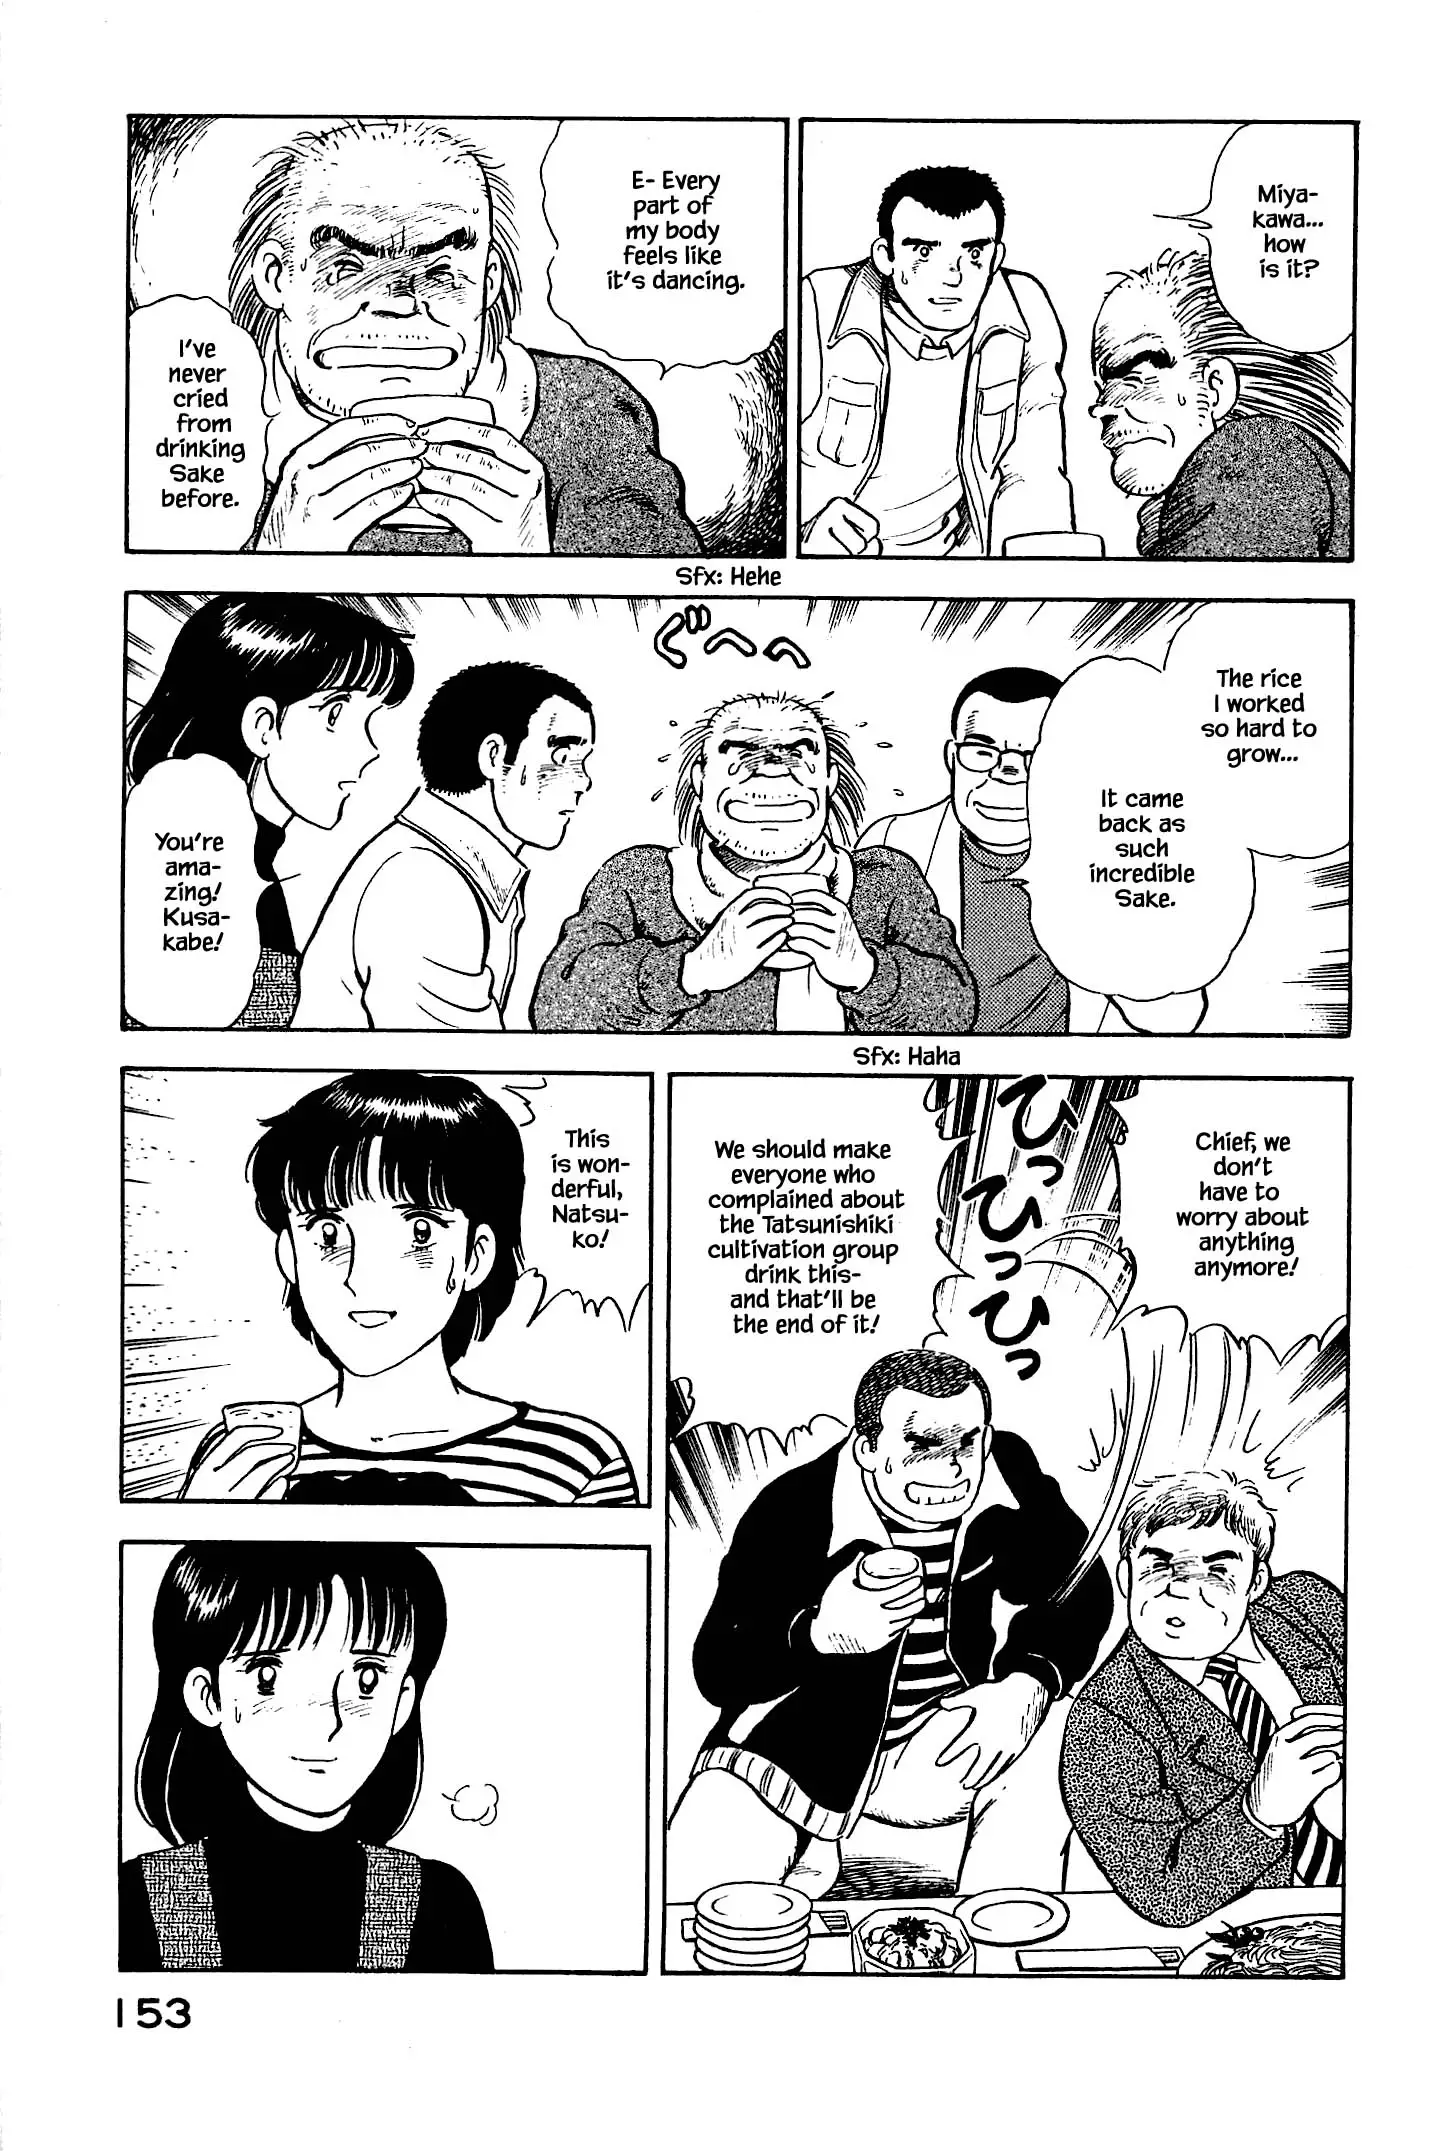 Natsuko's Sake - 128 page 13-13a2b380